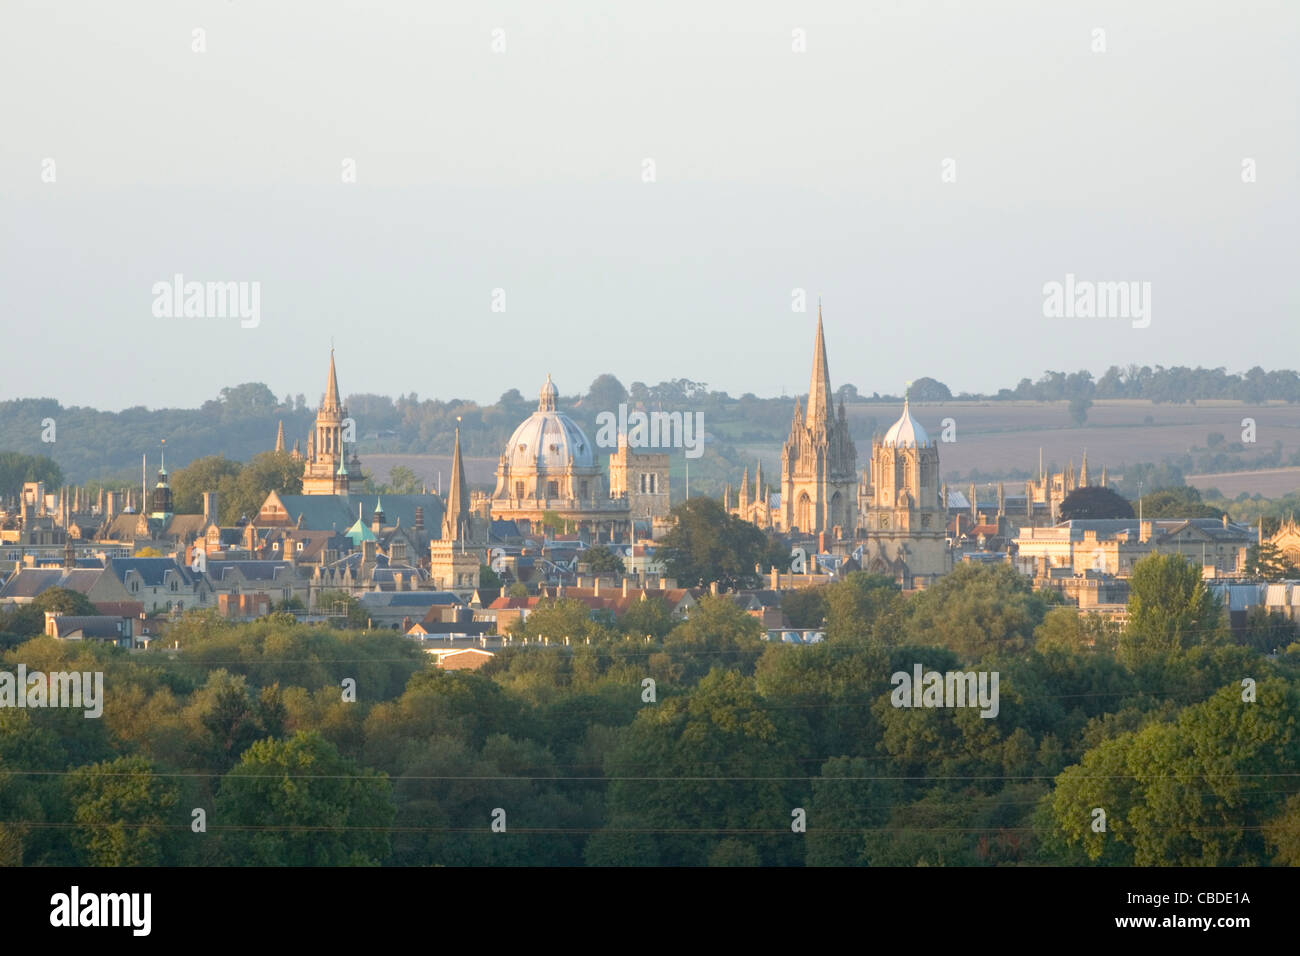 Oxford City Skyline zeigt die "Dreaming Spires" der Universität von Oxford. Oxfordshire. England Stockfoto